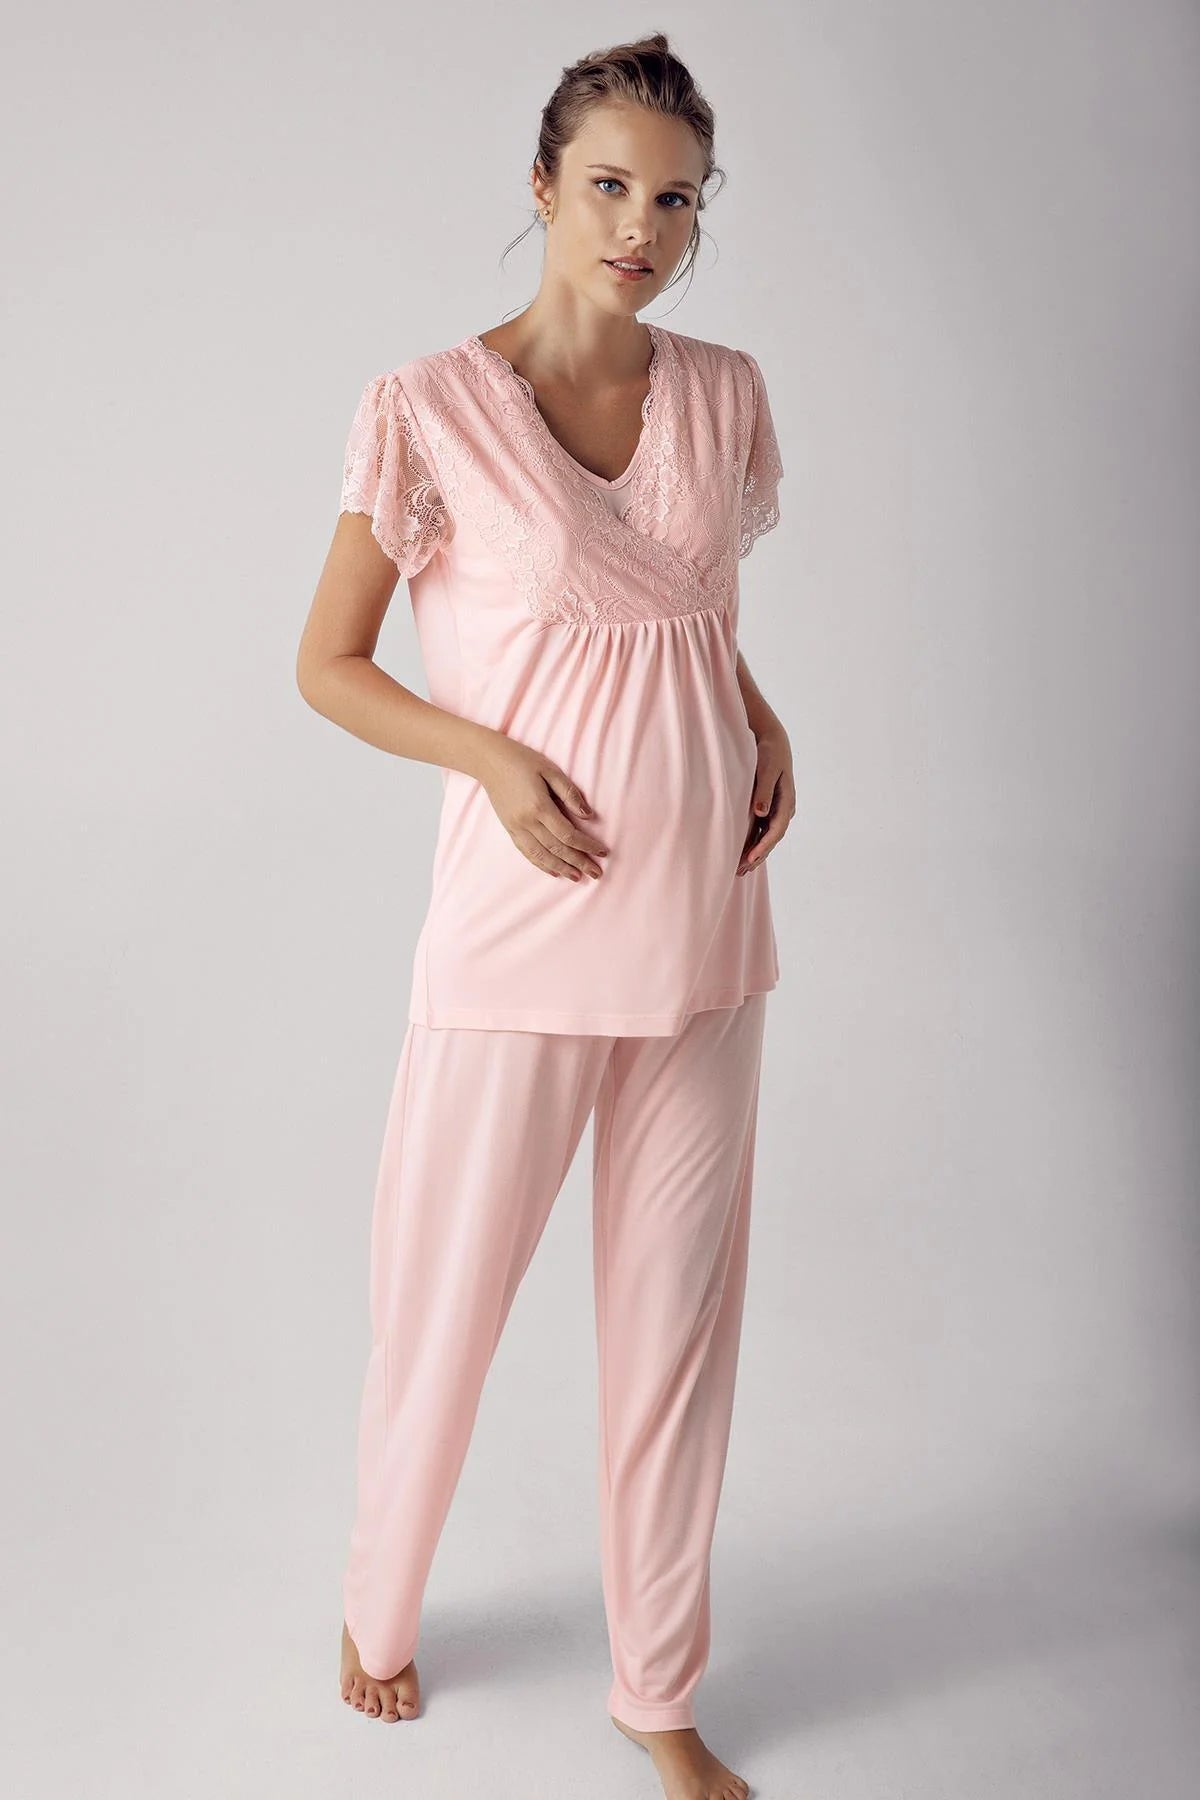 Shopymommy 14205 Striped V-Neck Maternity & Nursing Pajamas Beige